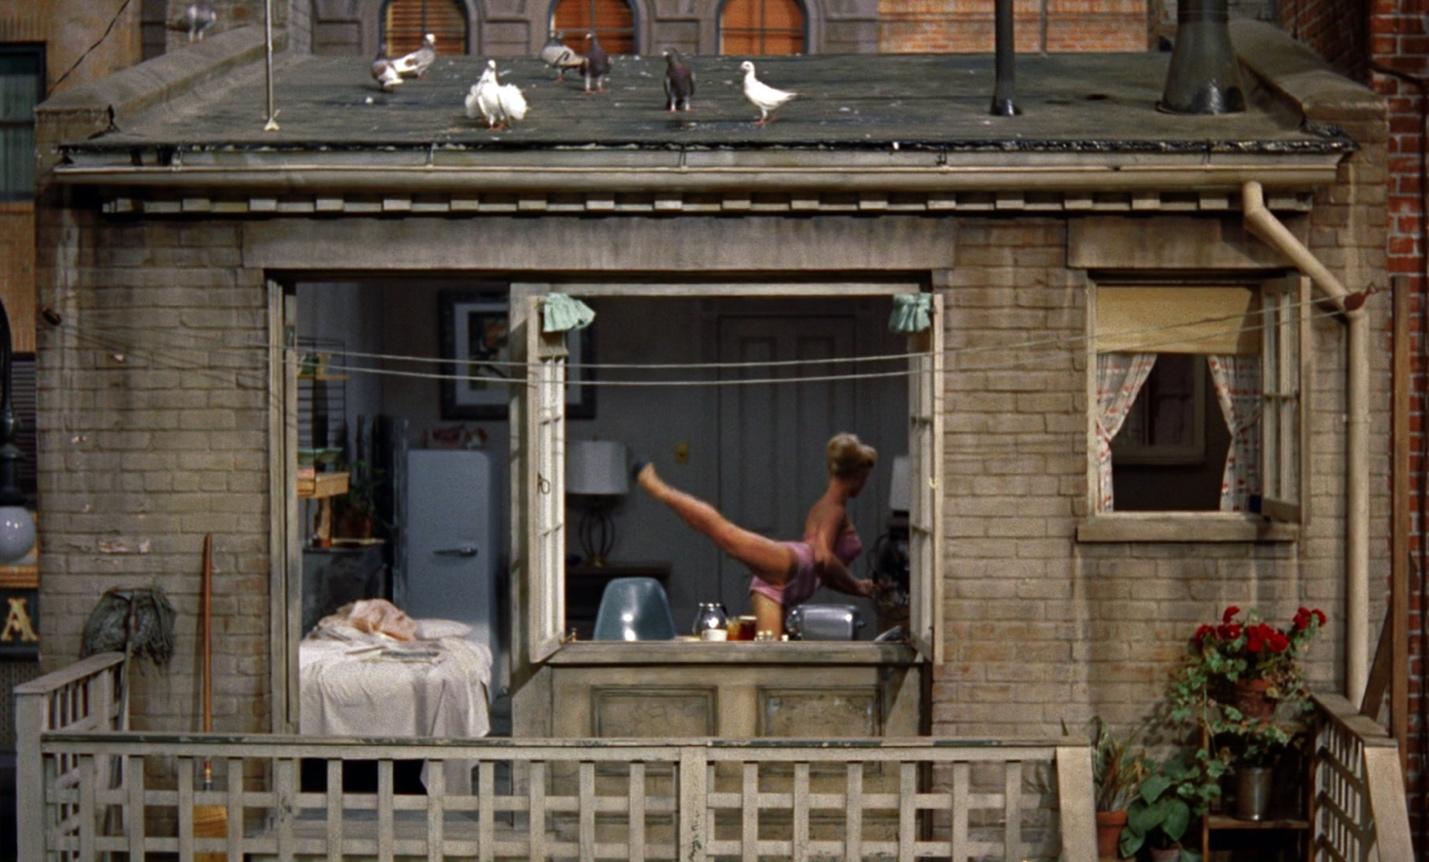 "Rear Window" Film Scene